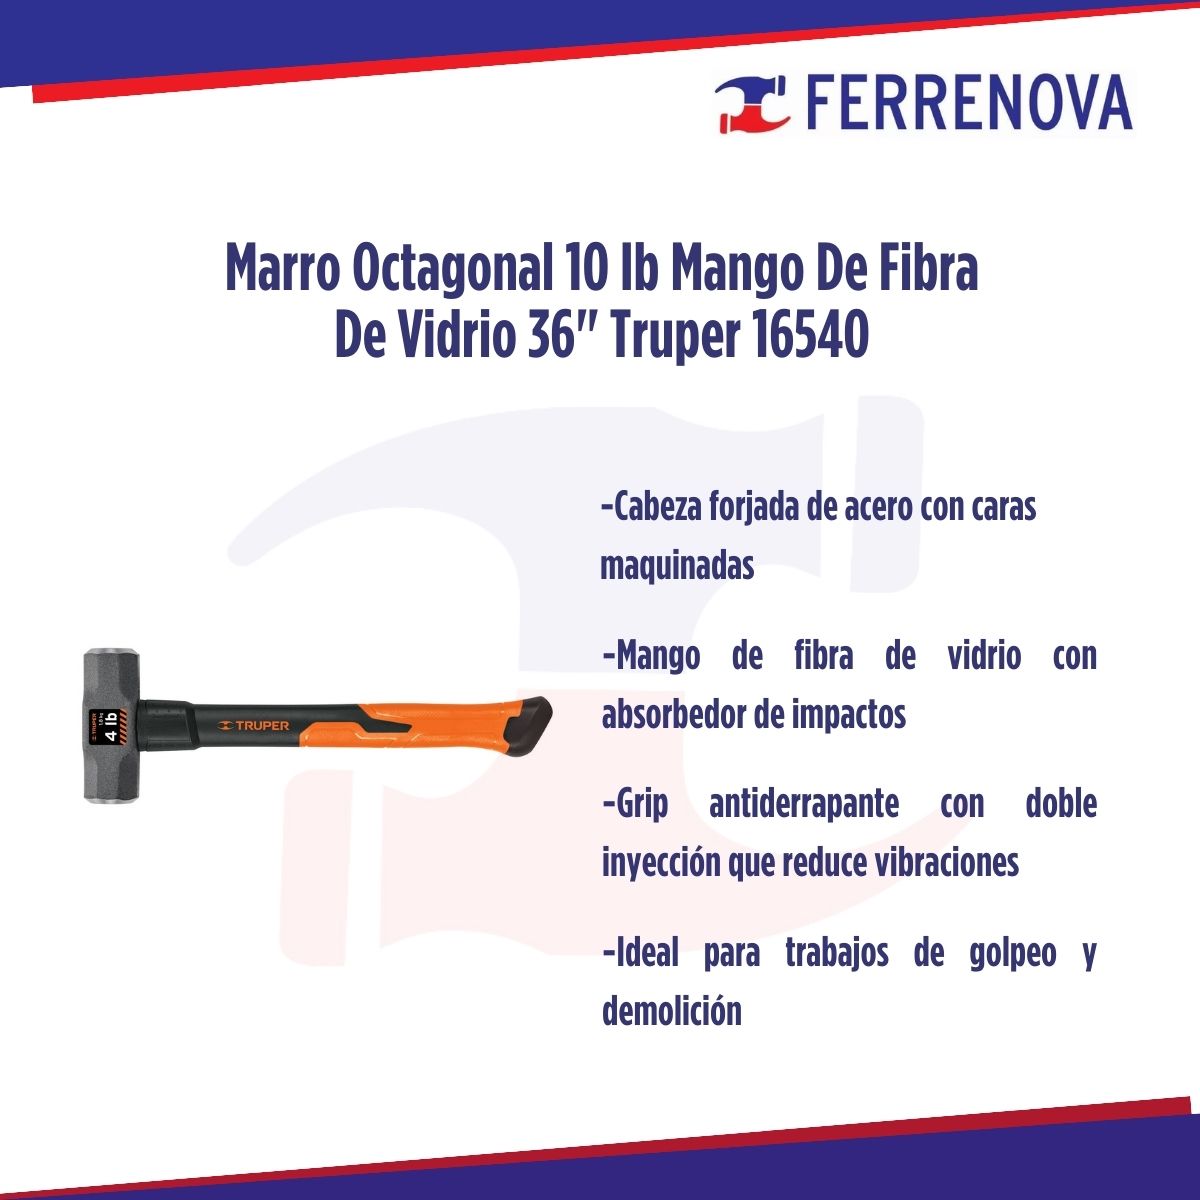 Marro Octagonal 10lb Mango De Fibra De Vidrio 36" Truper 16540